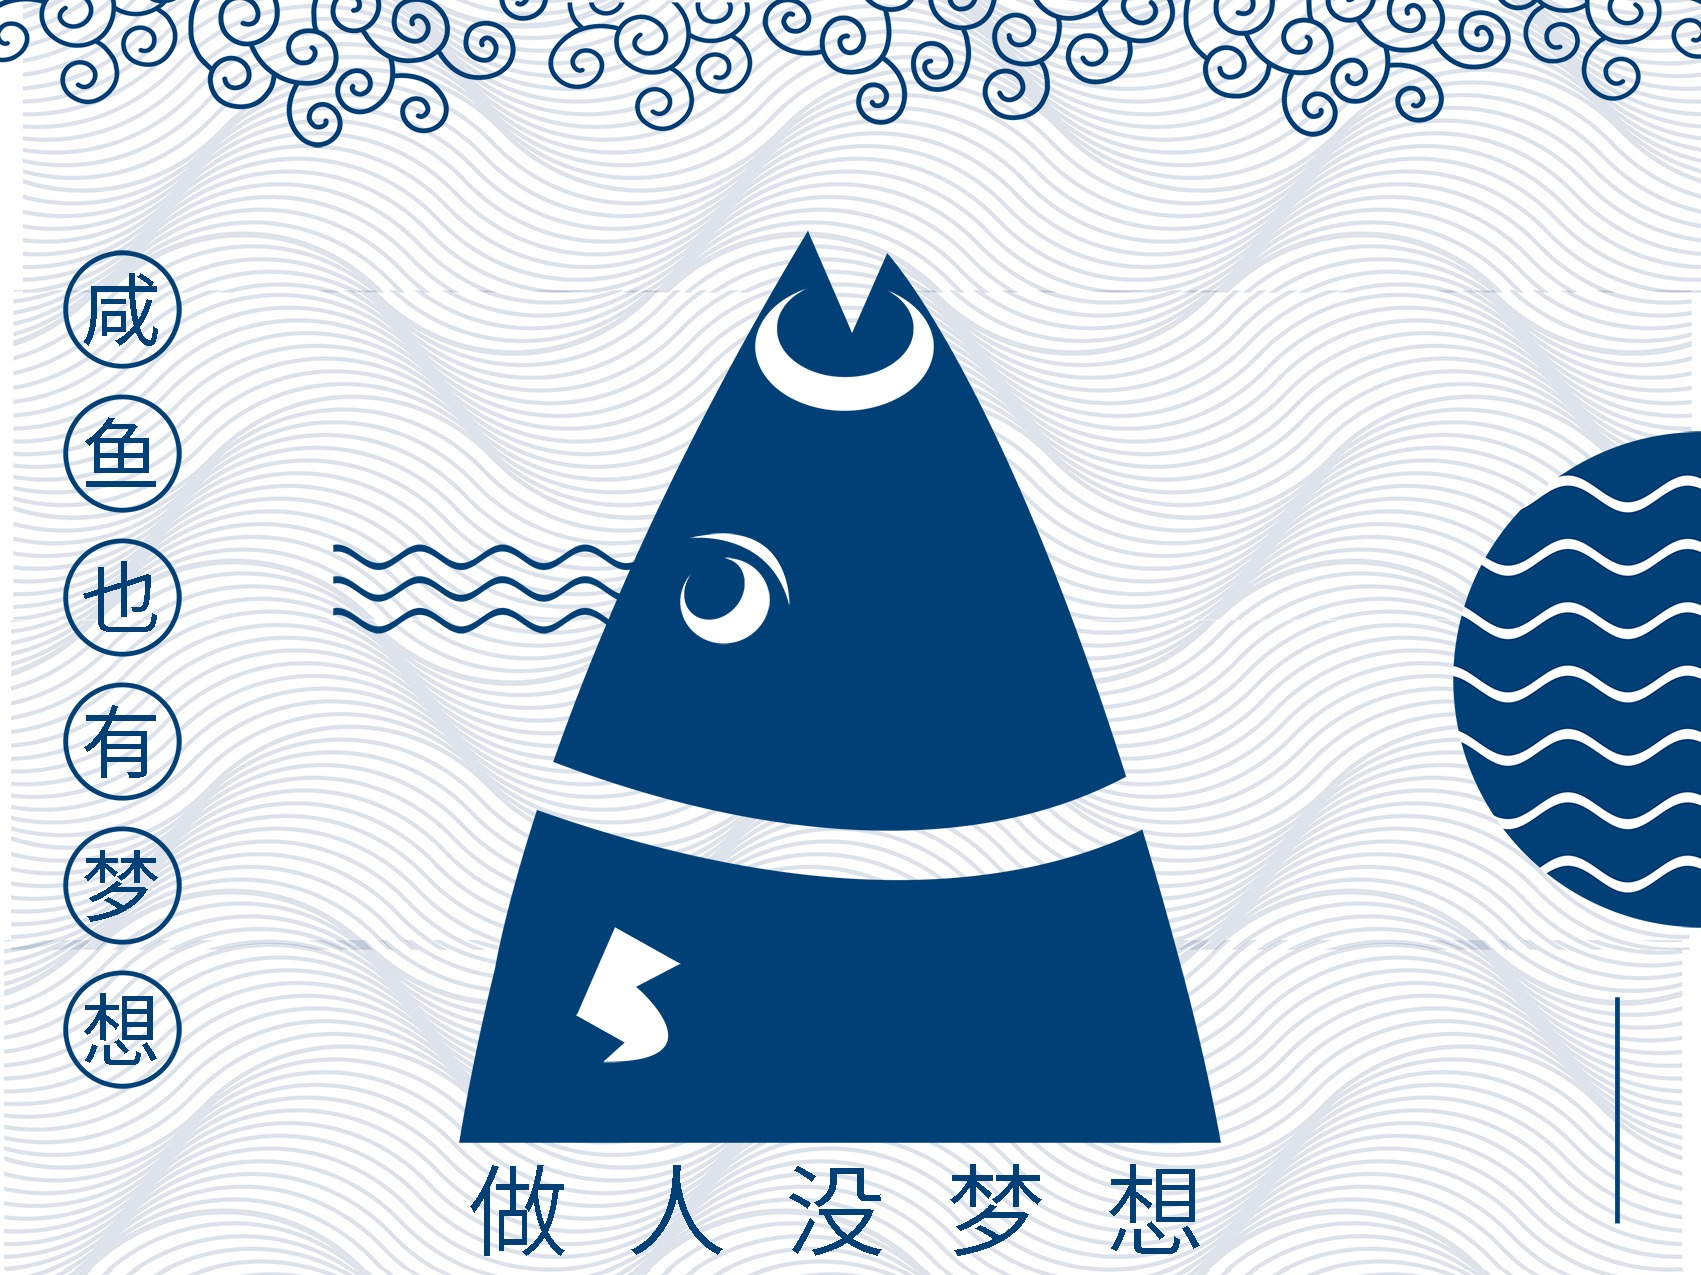 创意梦想咸鱼企业励志文化展板PSD广告设计素材海报模板免费下载-享设计